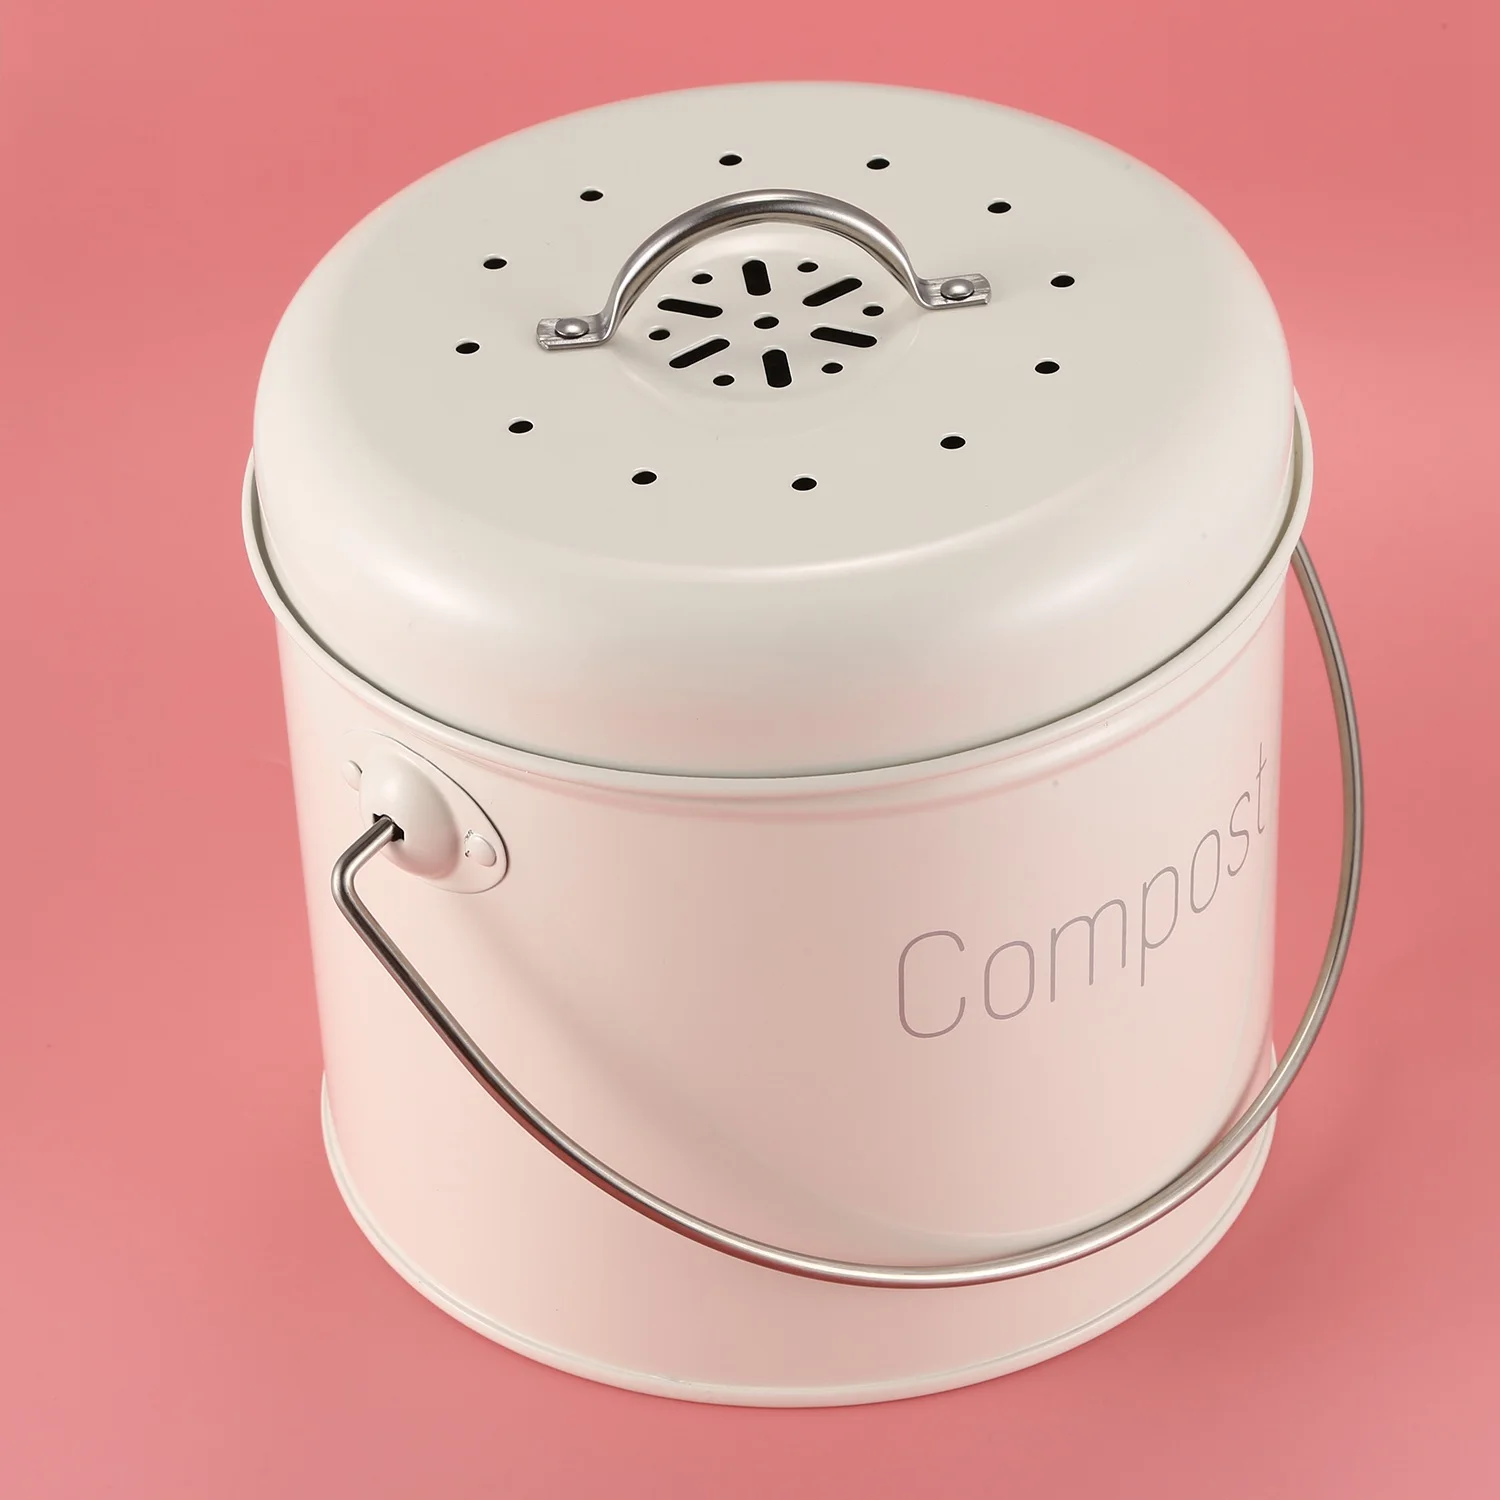 Кофа кофа за компост, 3 л - Кухненско кофа кофа за компост от неръждаема стомана - Кухненски компостера за хранителни отпадъци - Въглероден филтър